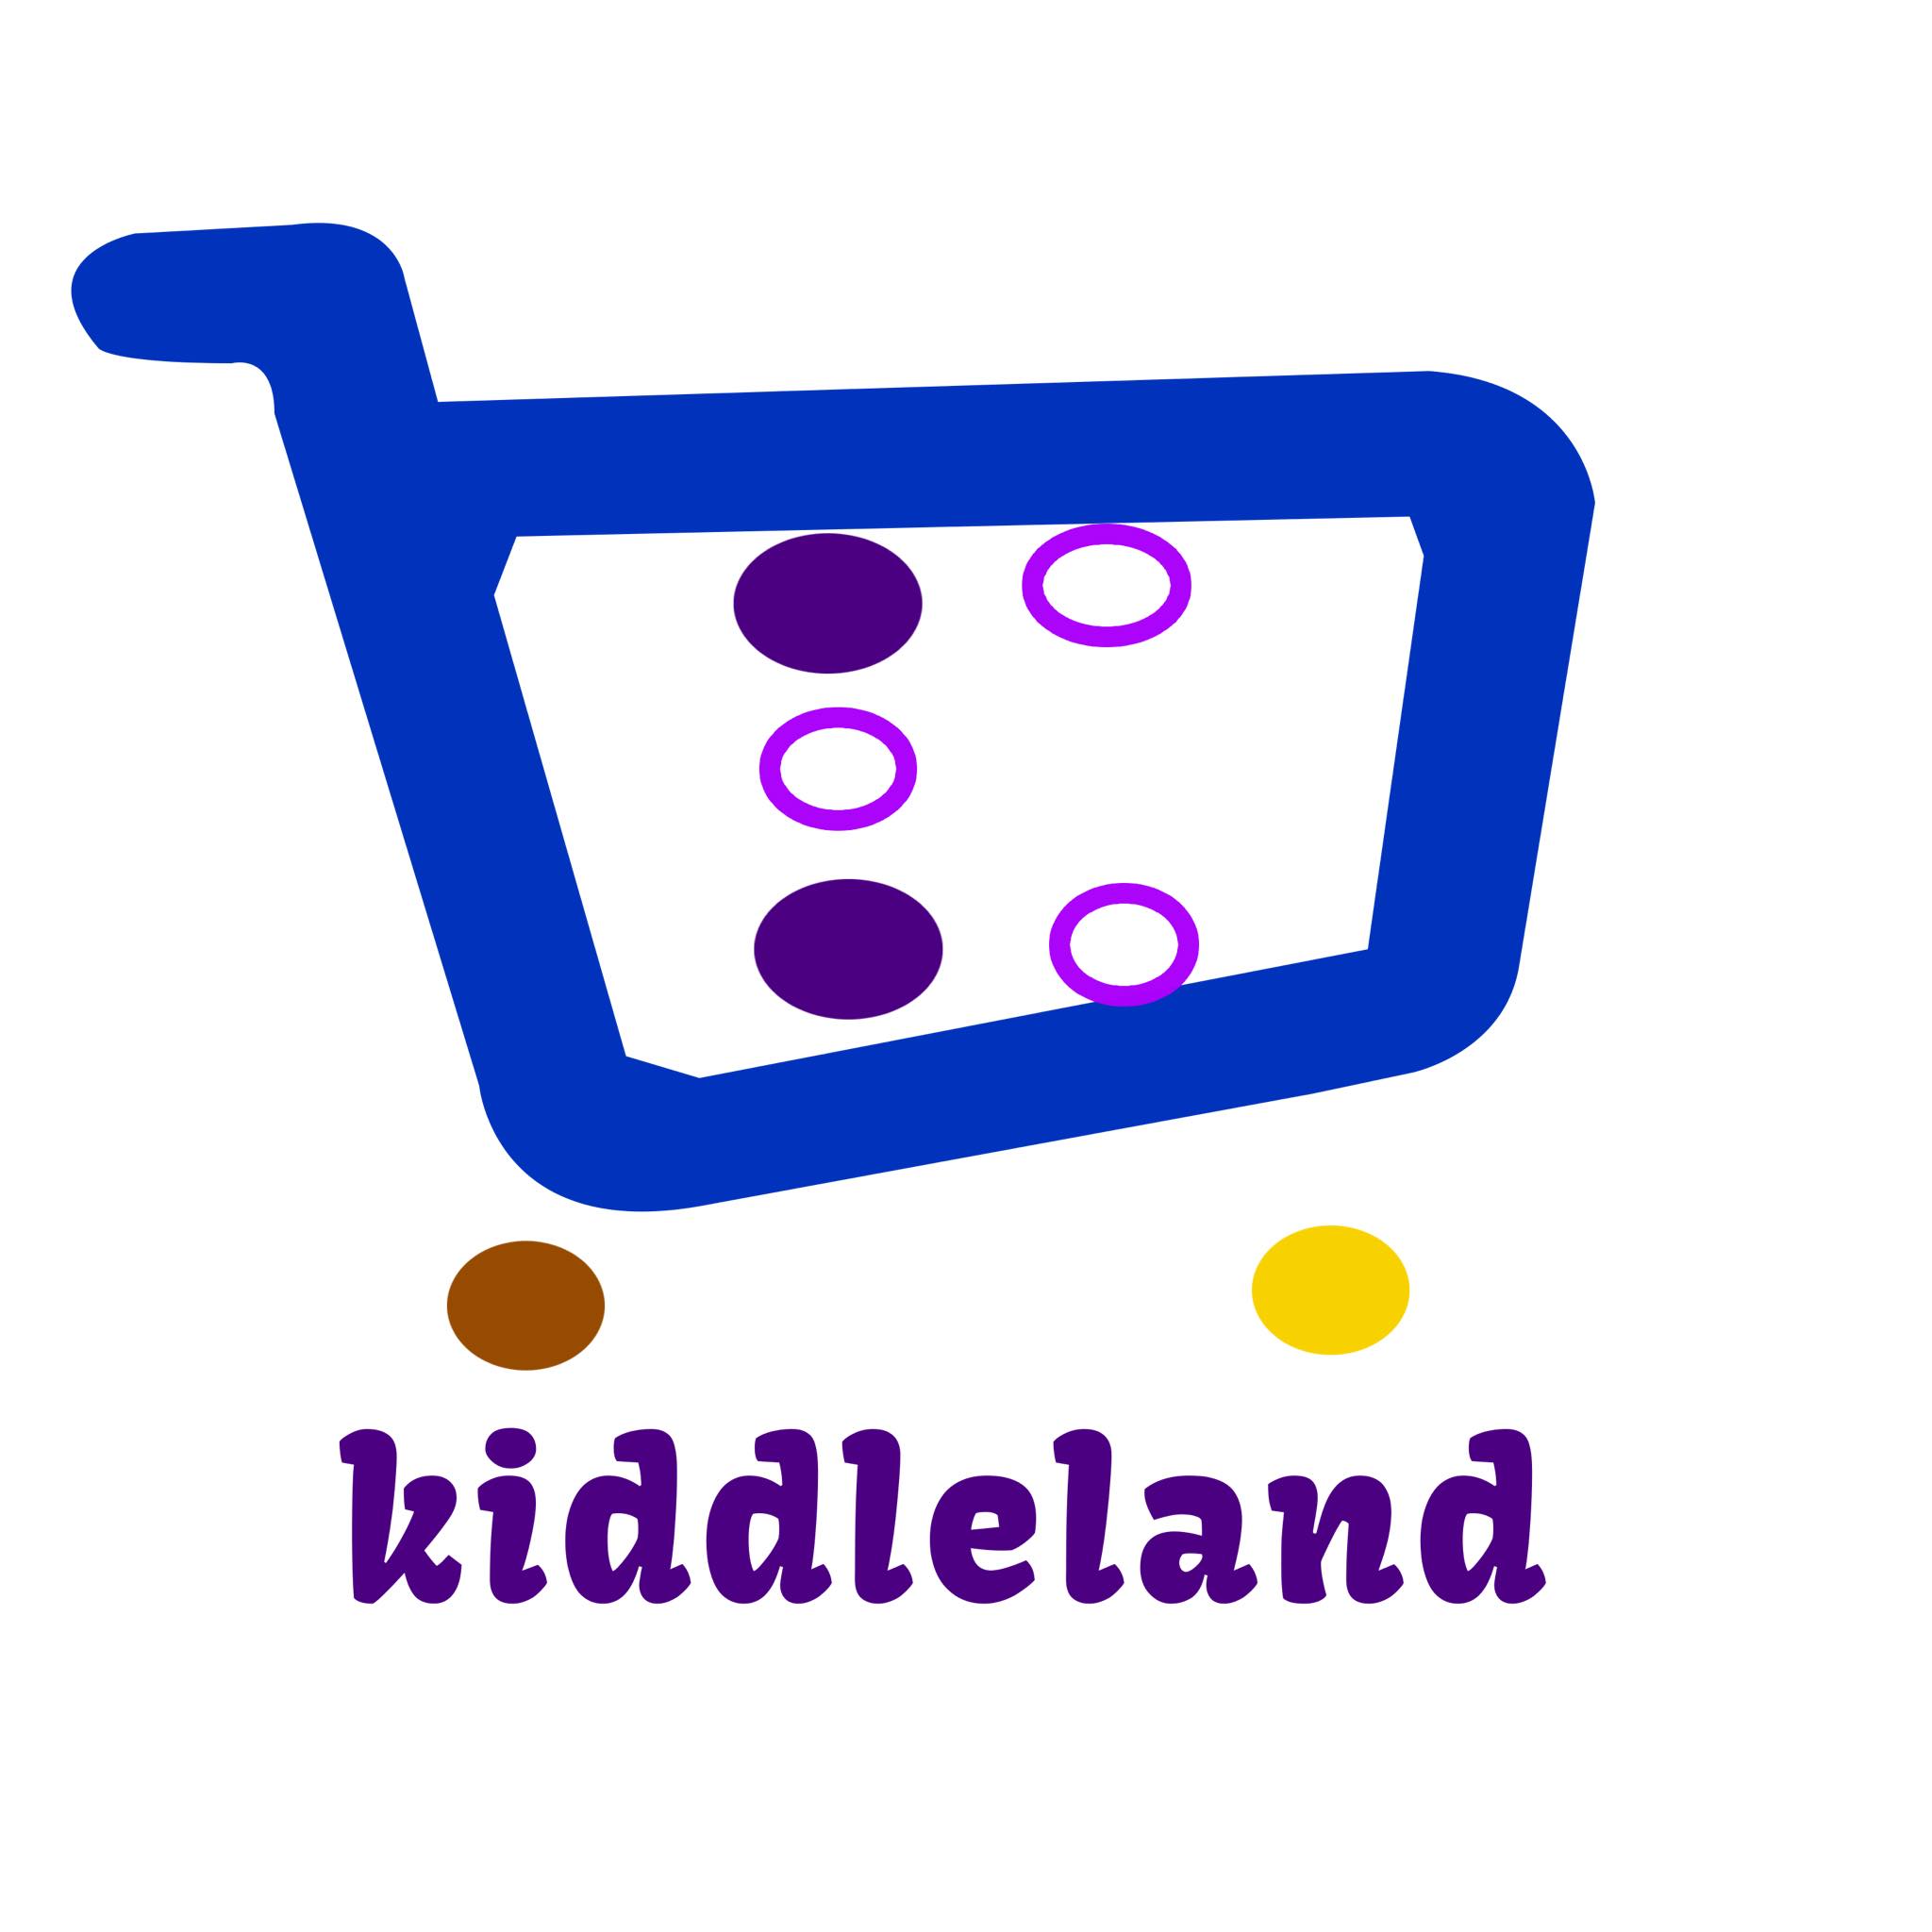 Kiddleland